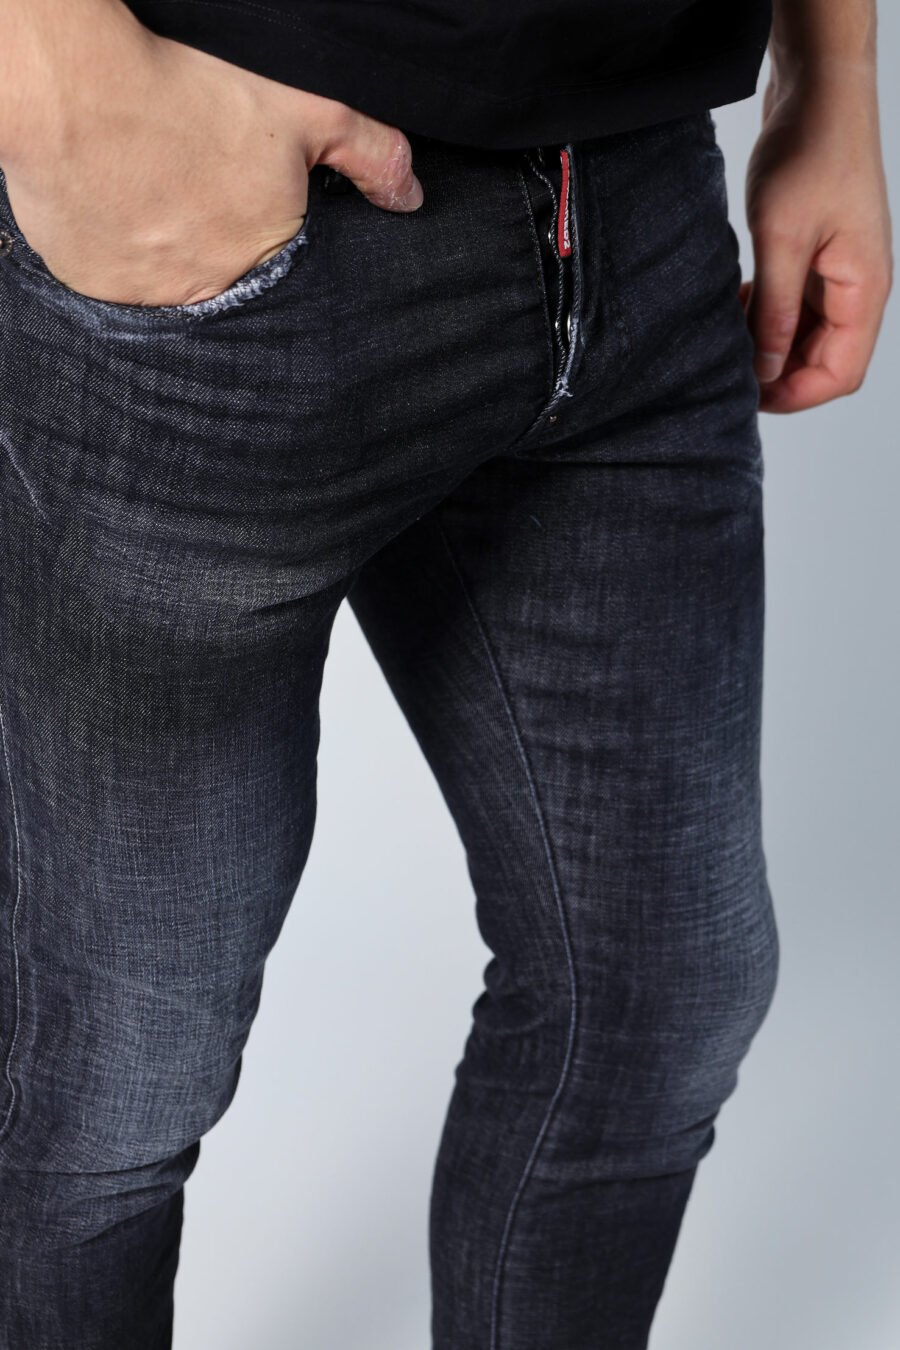 Halbgetragene schwarze "Skater-Jeans" Jeans - Untitled Catalog 05680